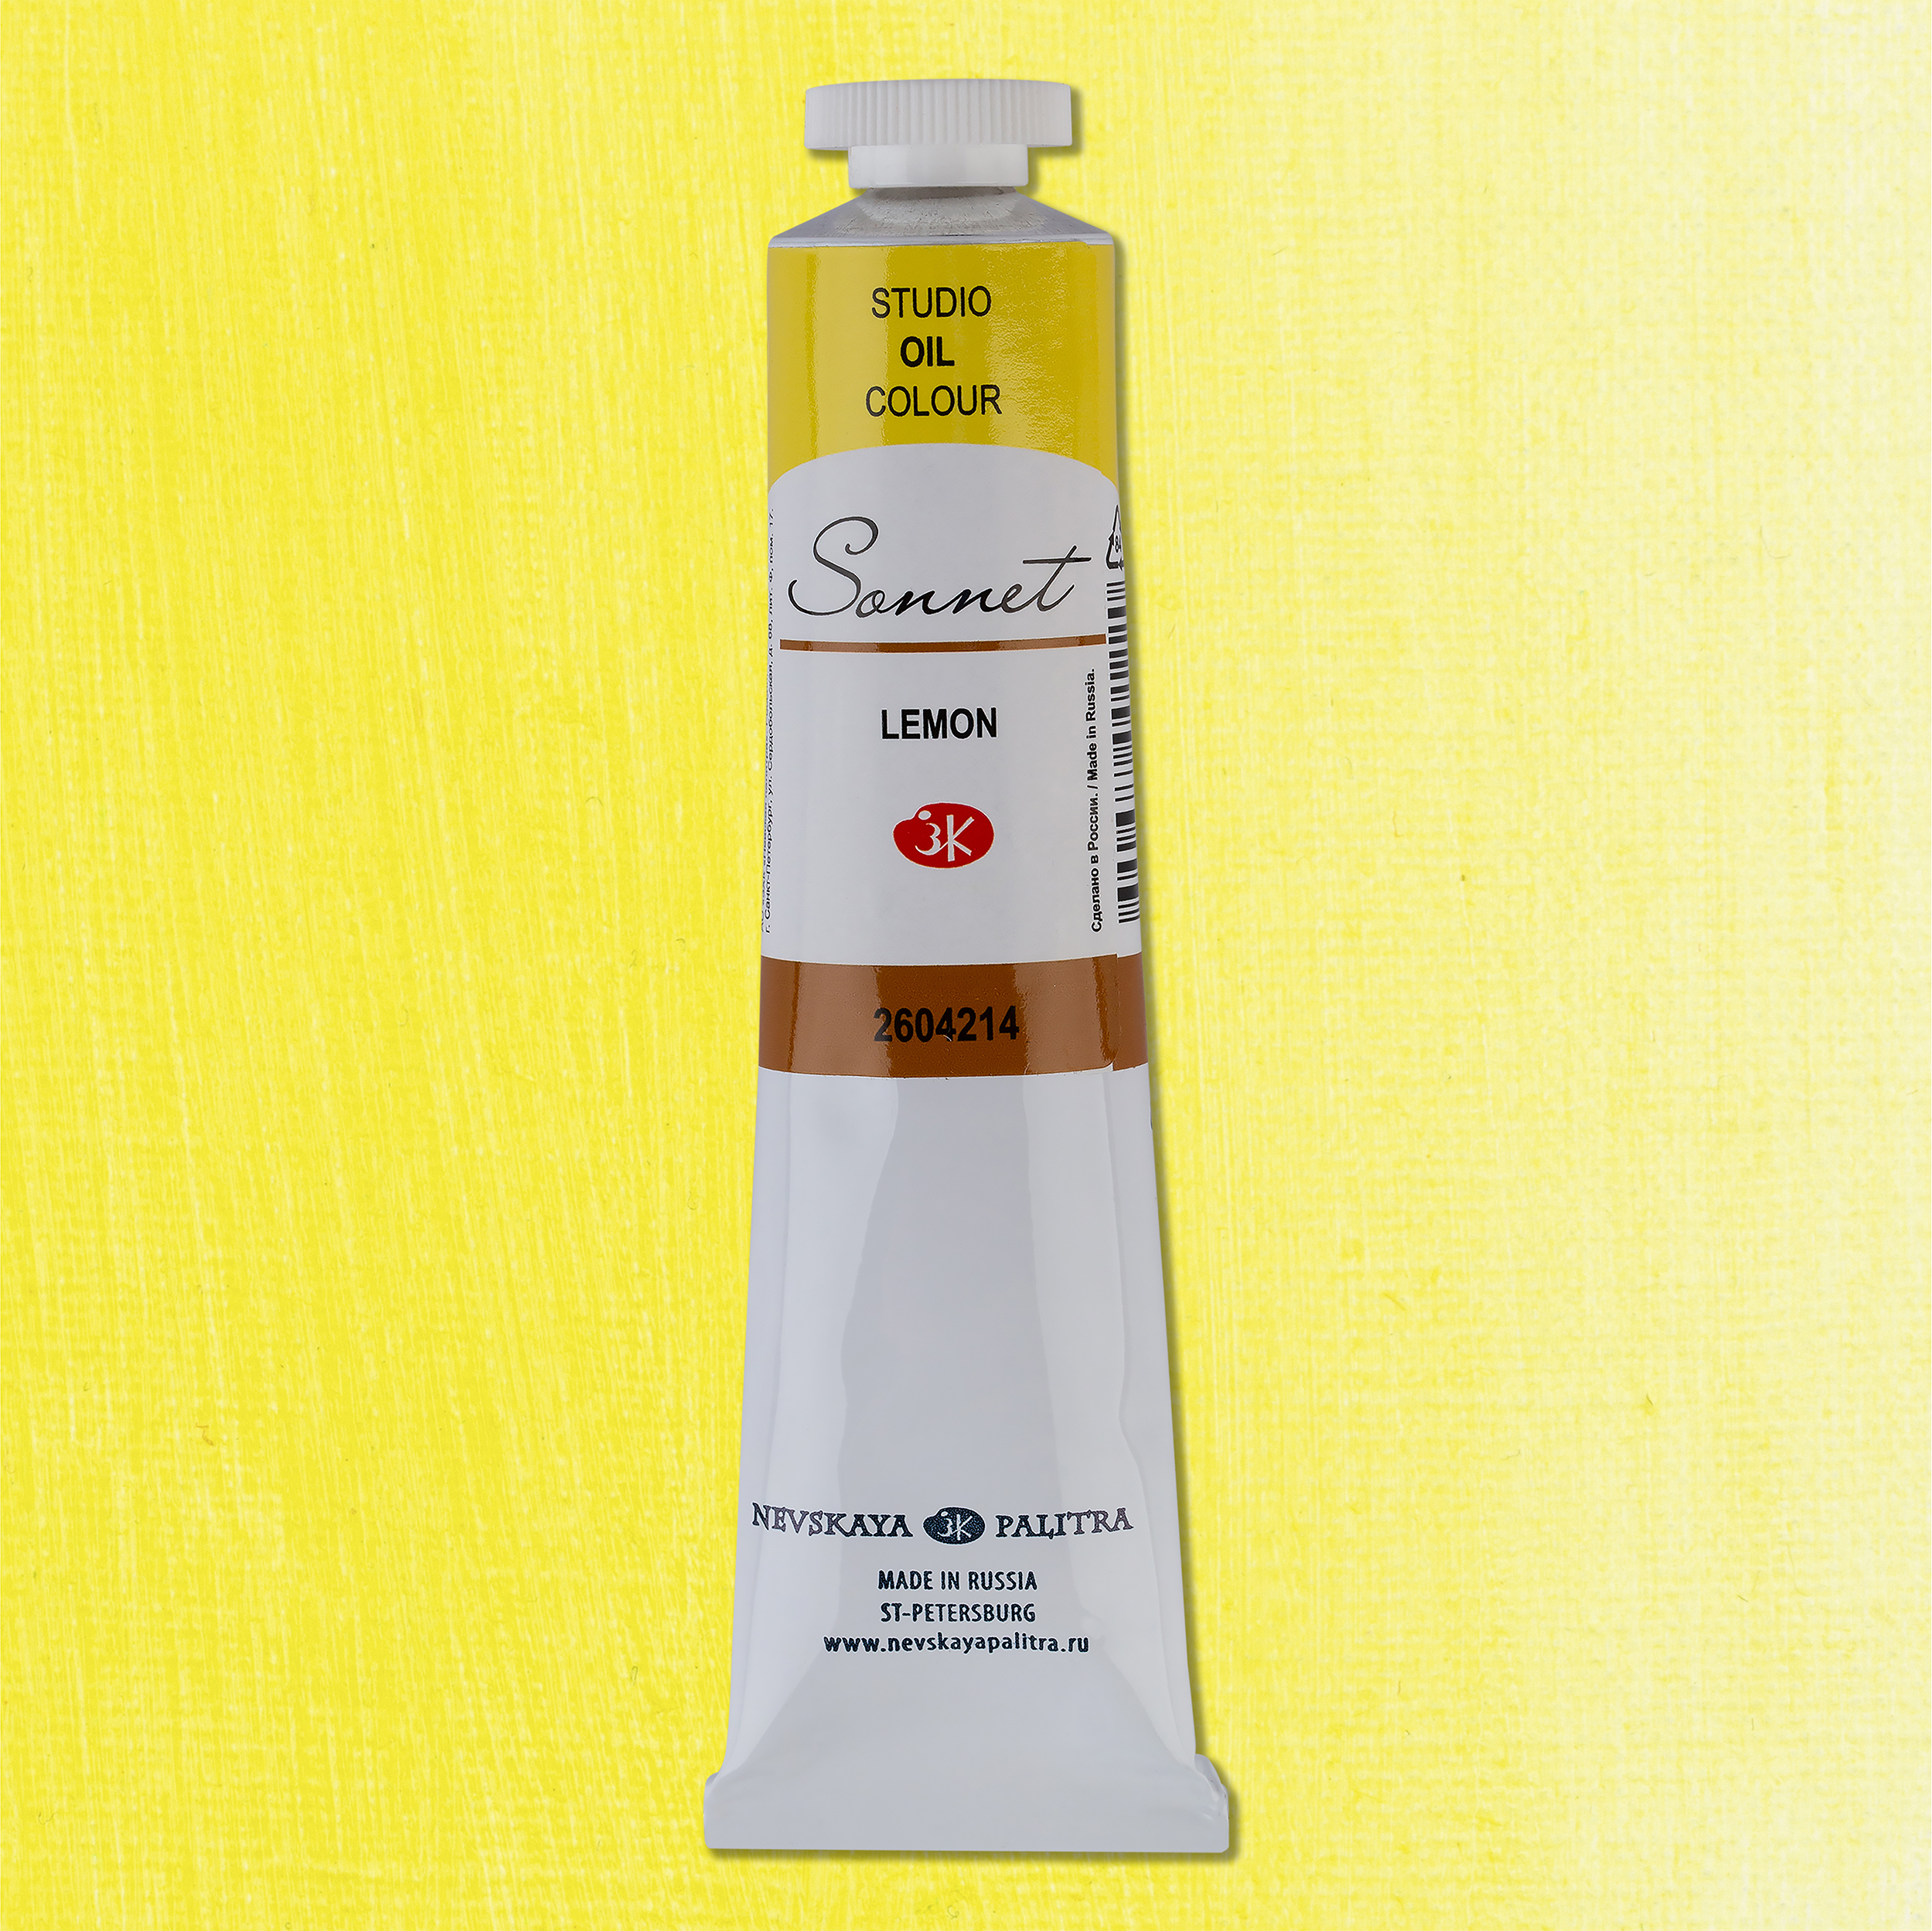 Oil colour "Sonnet", Lemon, tube, № 214